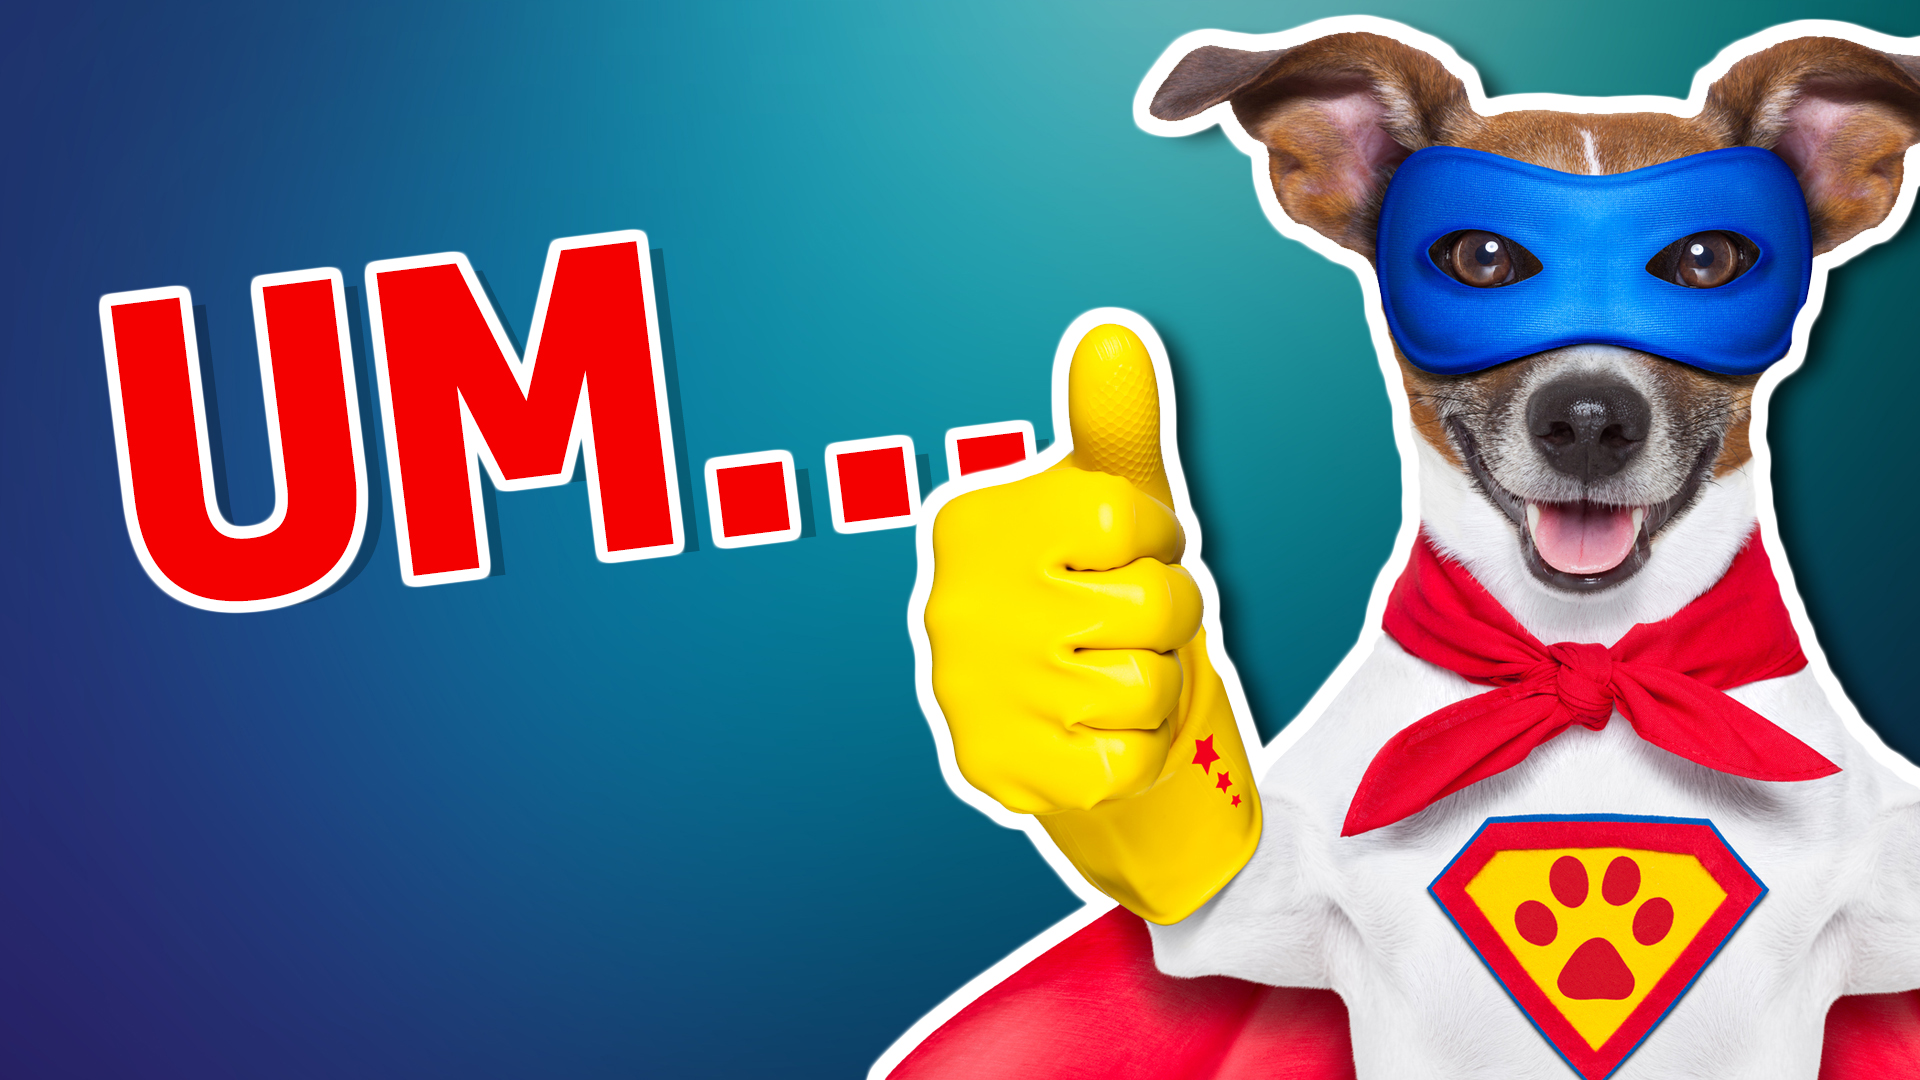 A dog dressed as a superhero